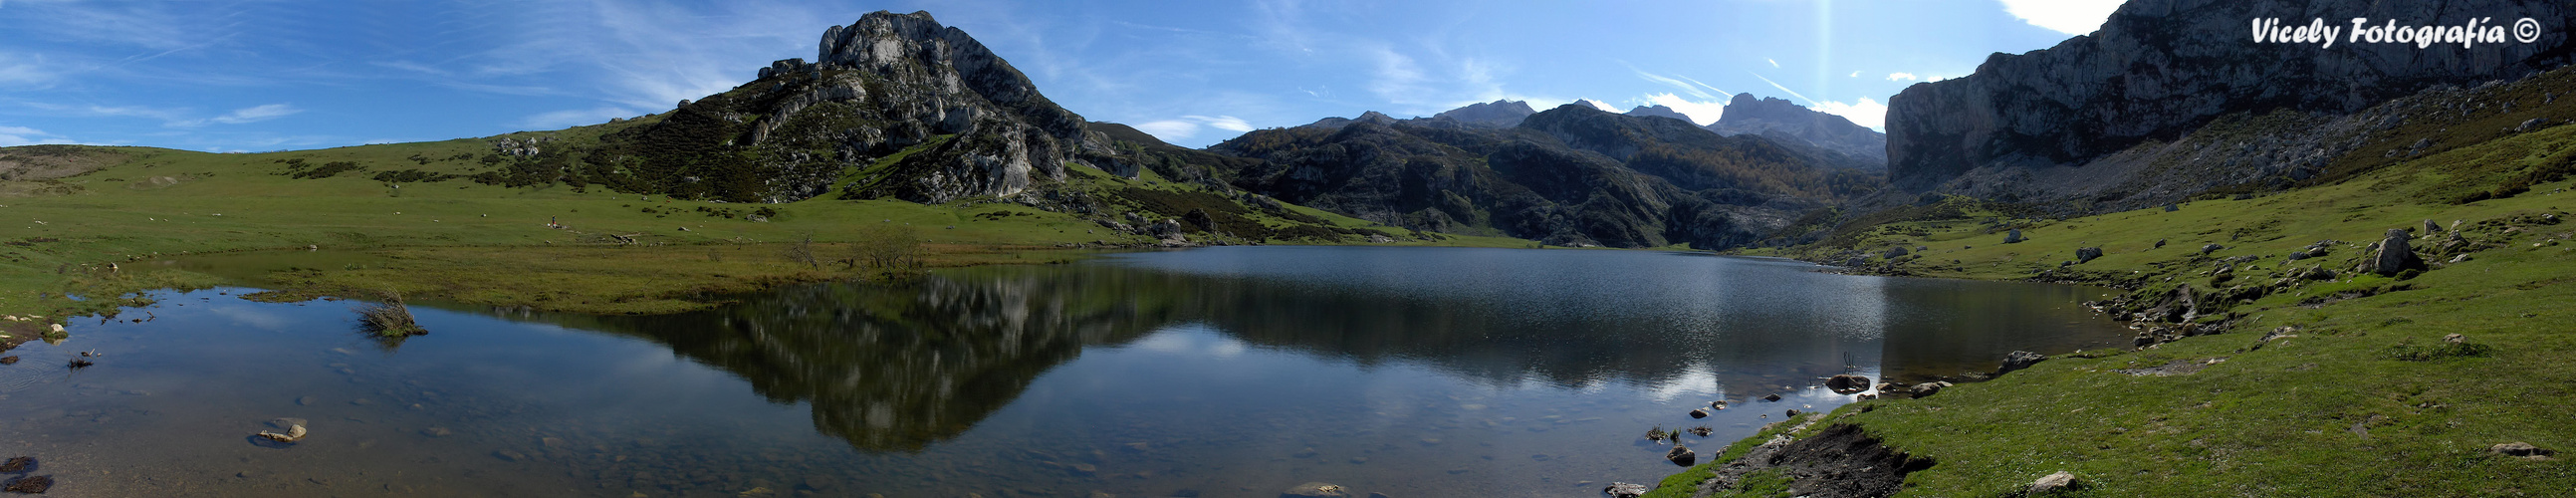 lagos de covadonga asturias